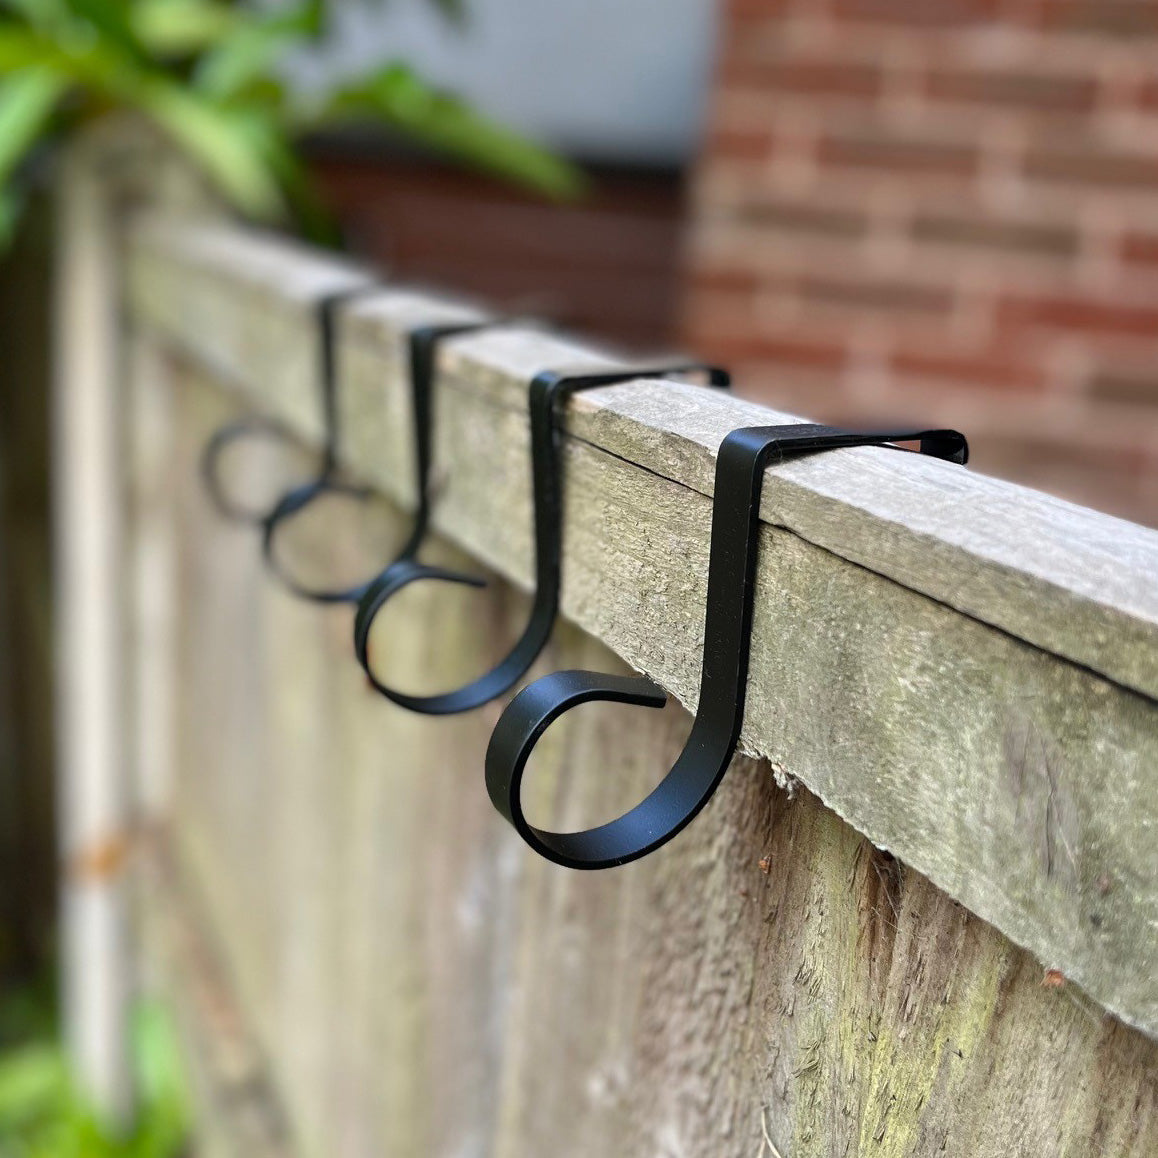 Bracket Fence Panel Over Fence Hooks (Set of 8)